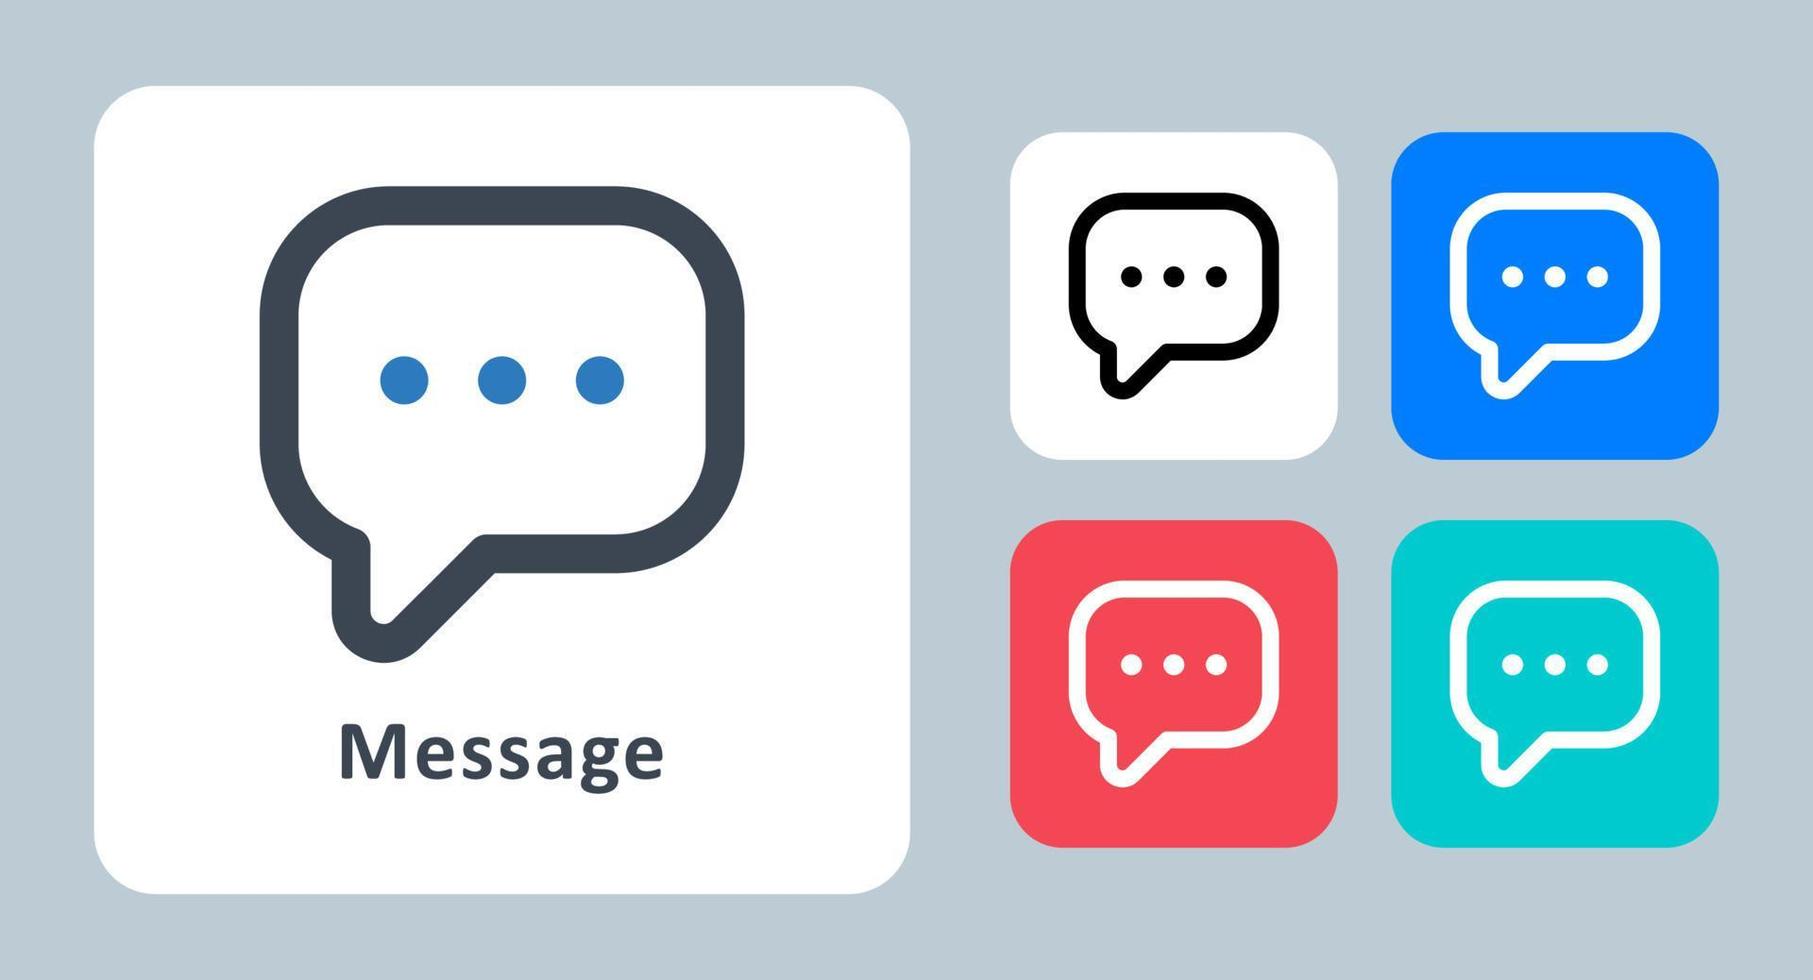 icona del messaggio - illustrazione vettoriale. chat, conversazione, messaggio, conversazione, commento, discorso, bolla, comunicazione, linea, contorno, piatto, icone. vettore